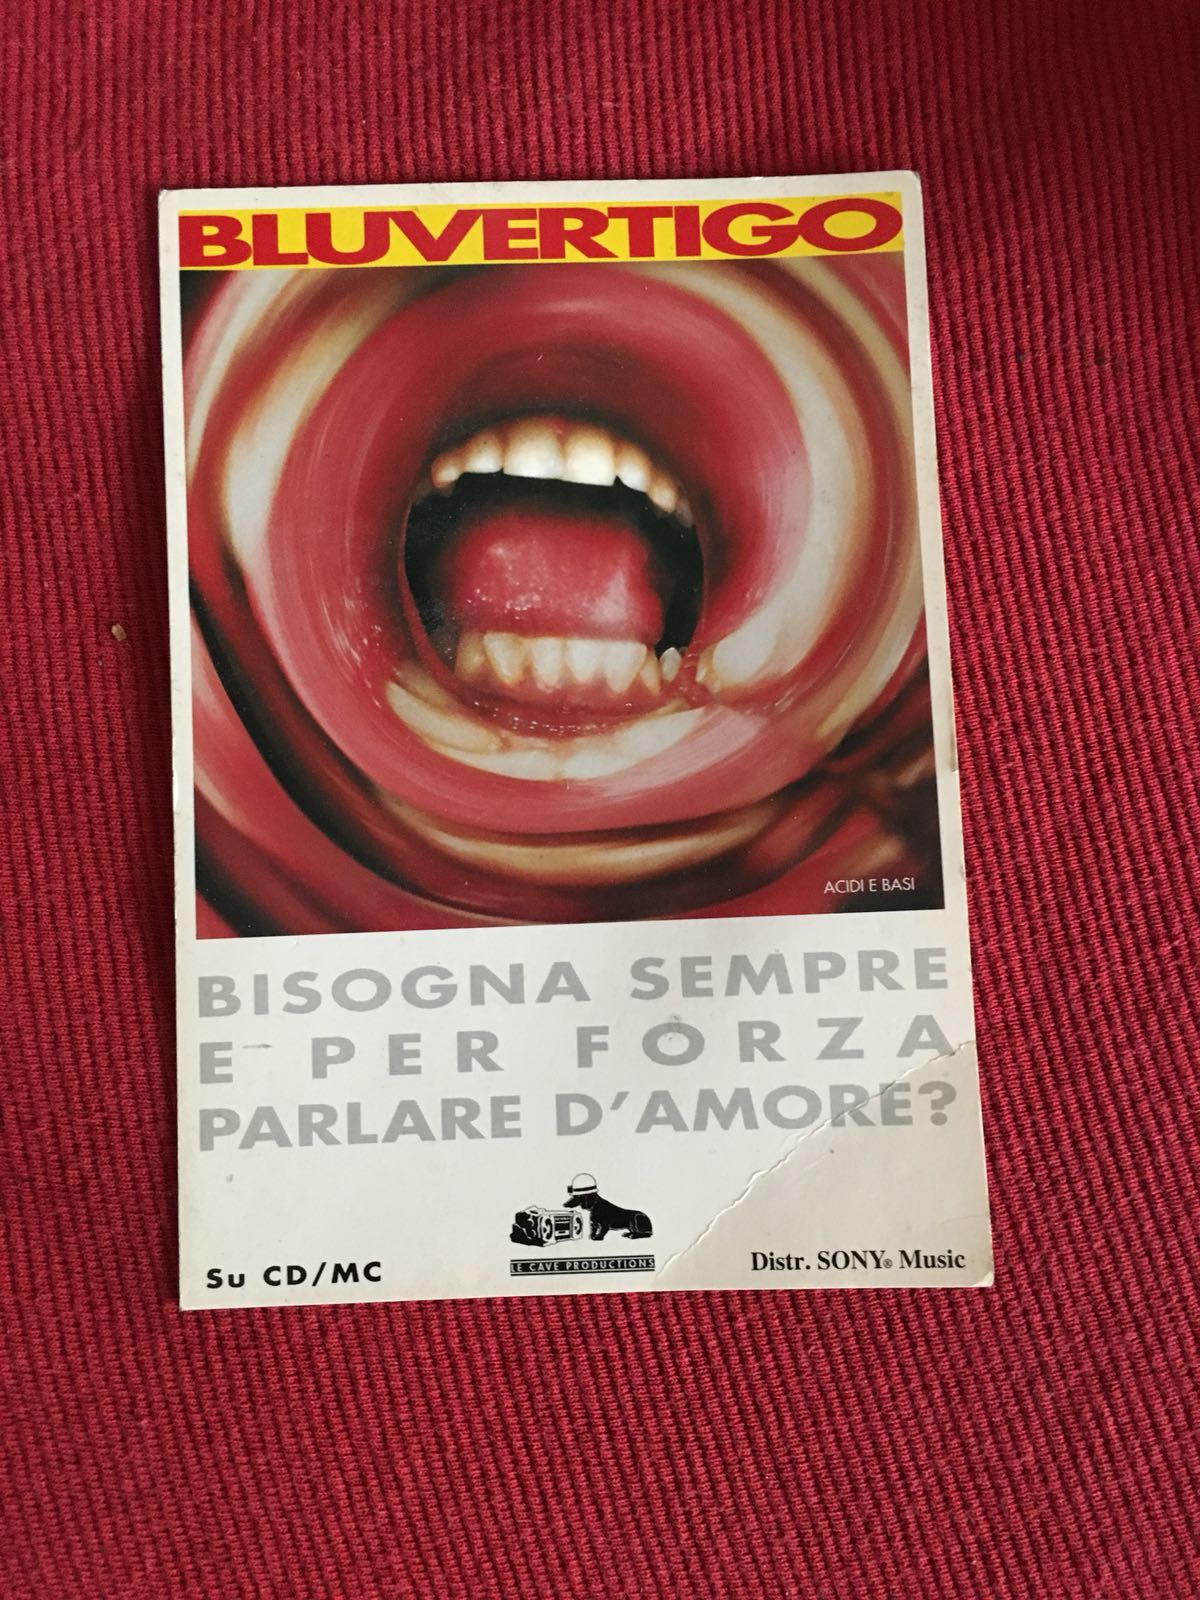 Cartolina promozionale "Acidi e Basi" primo album dei Bluvertigo (1995)